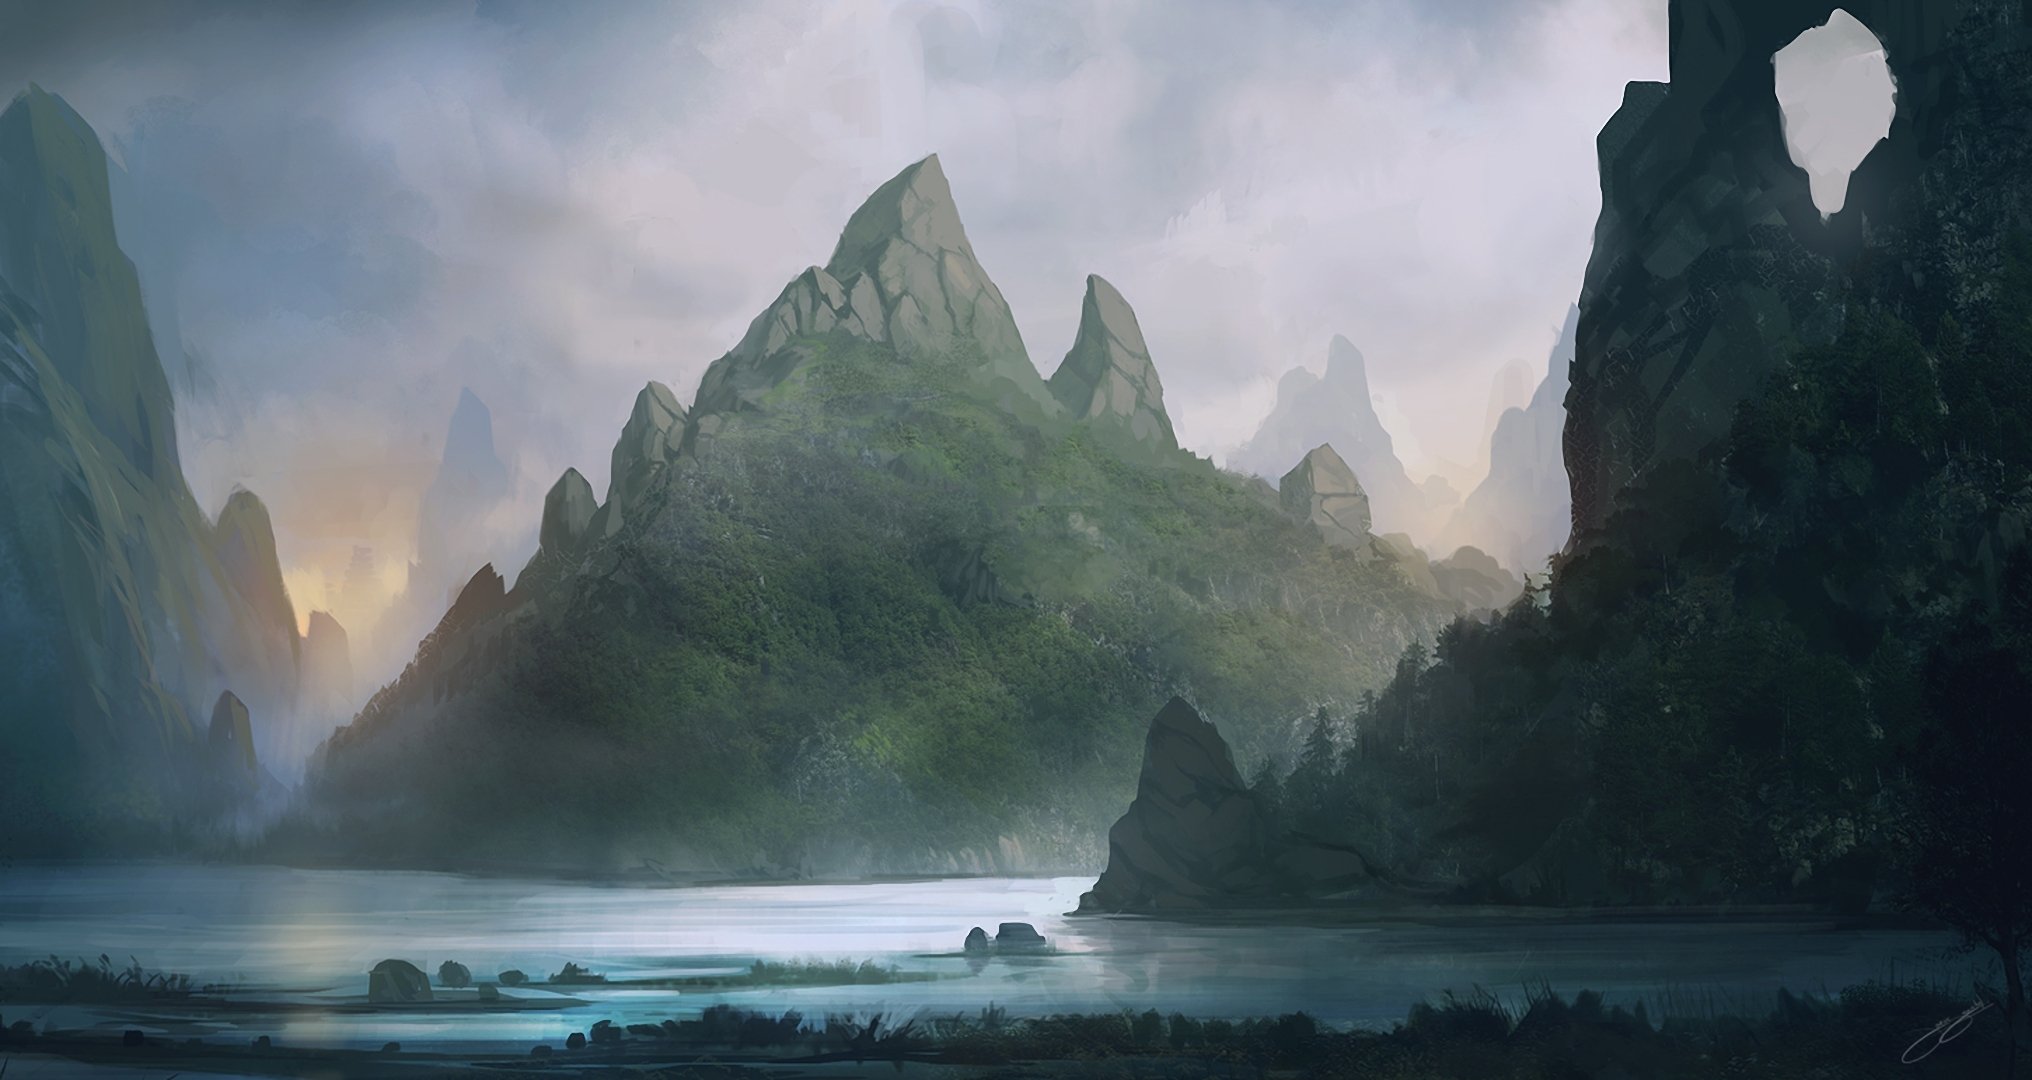 sztuka blinck krajobraz góry skały jezioro rzeka woda